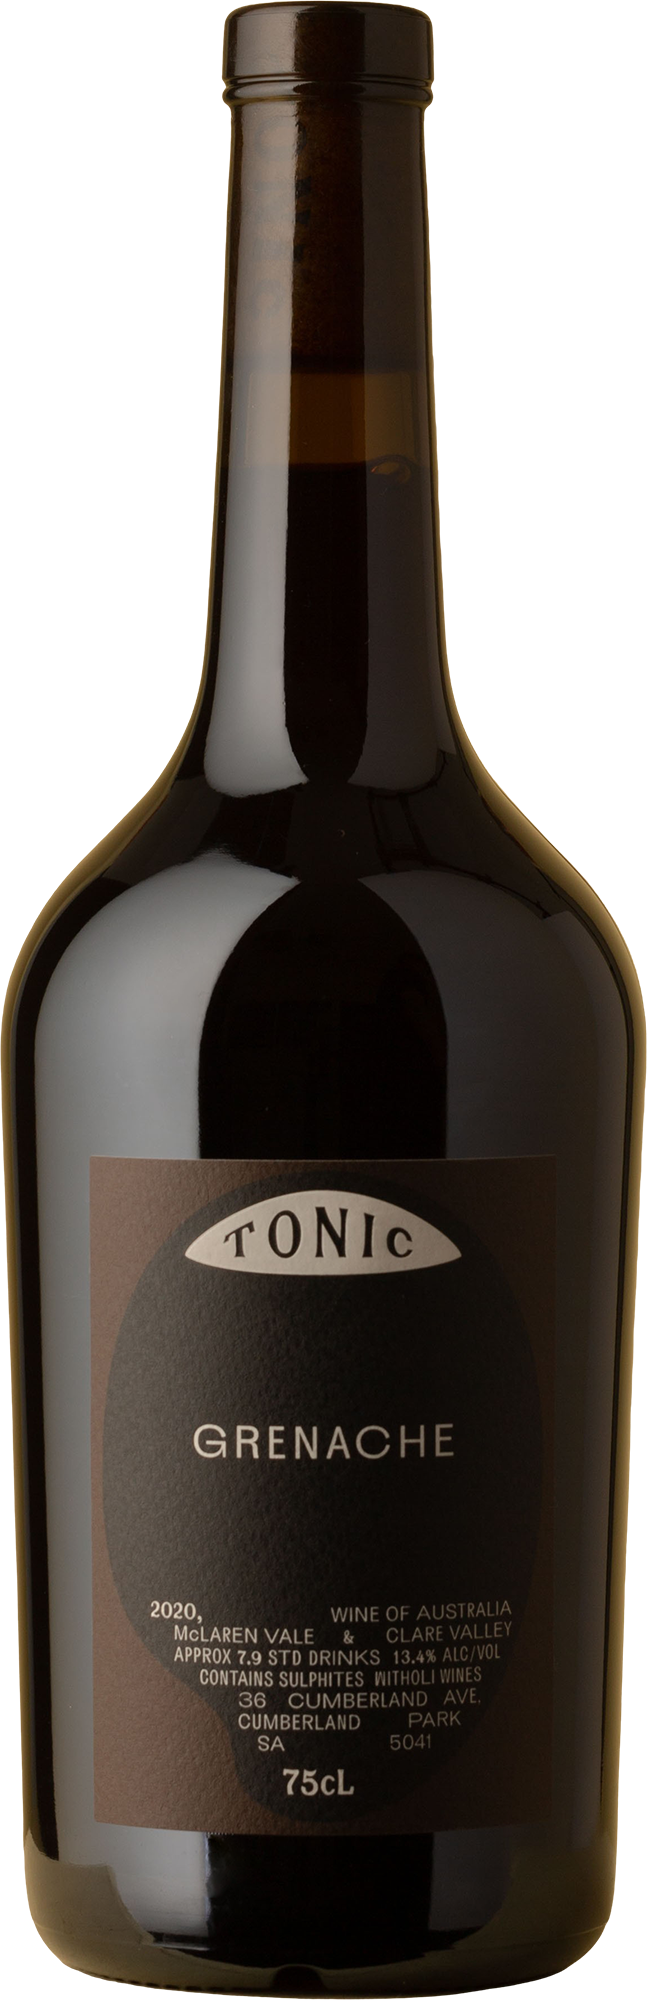 Tonic - Grenache 2020 Red Wine